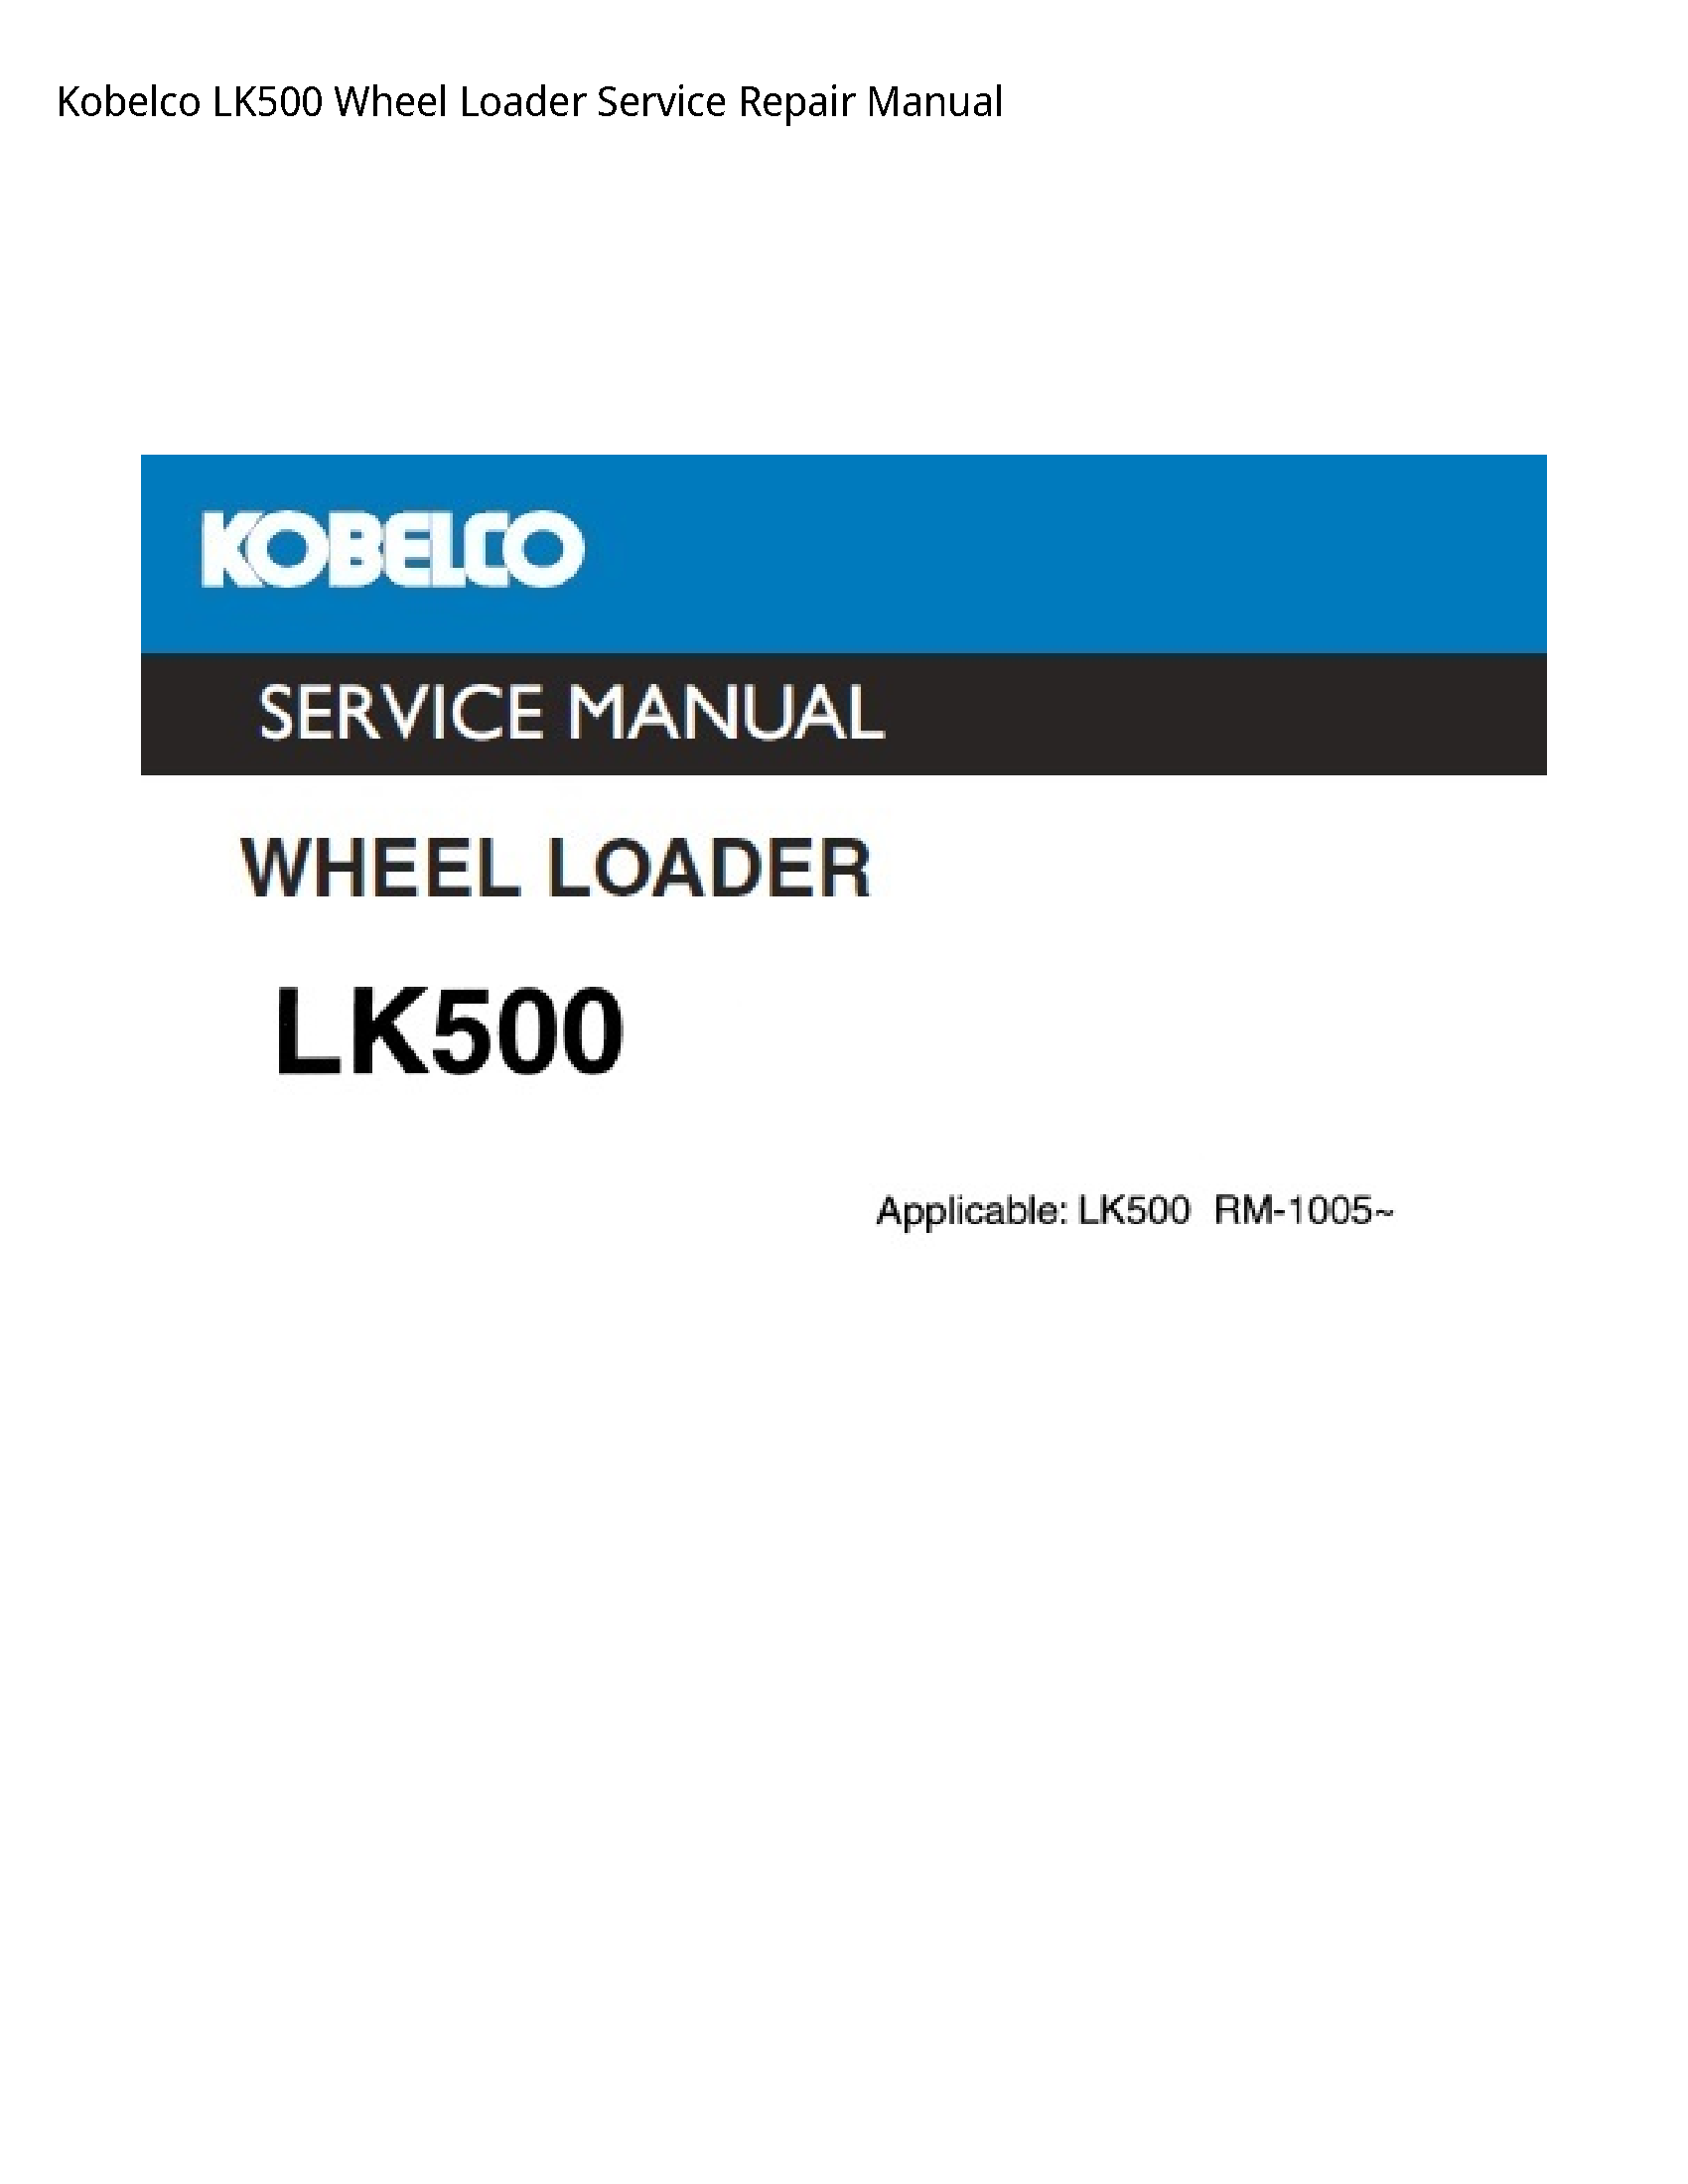 Kobelco LK500 Wheel Loader manual